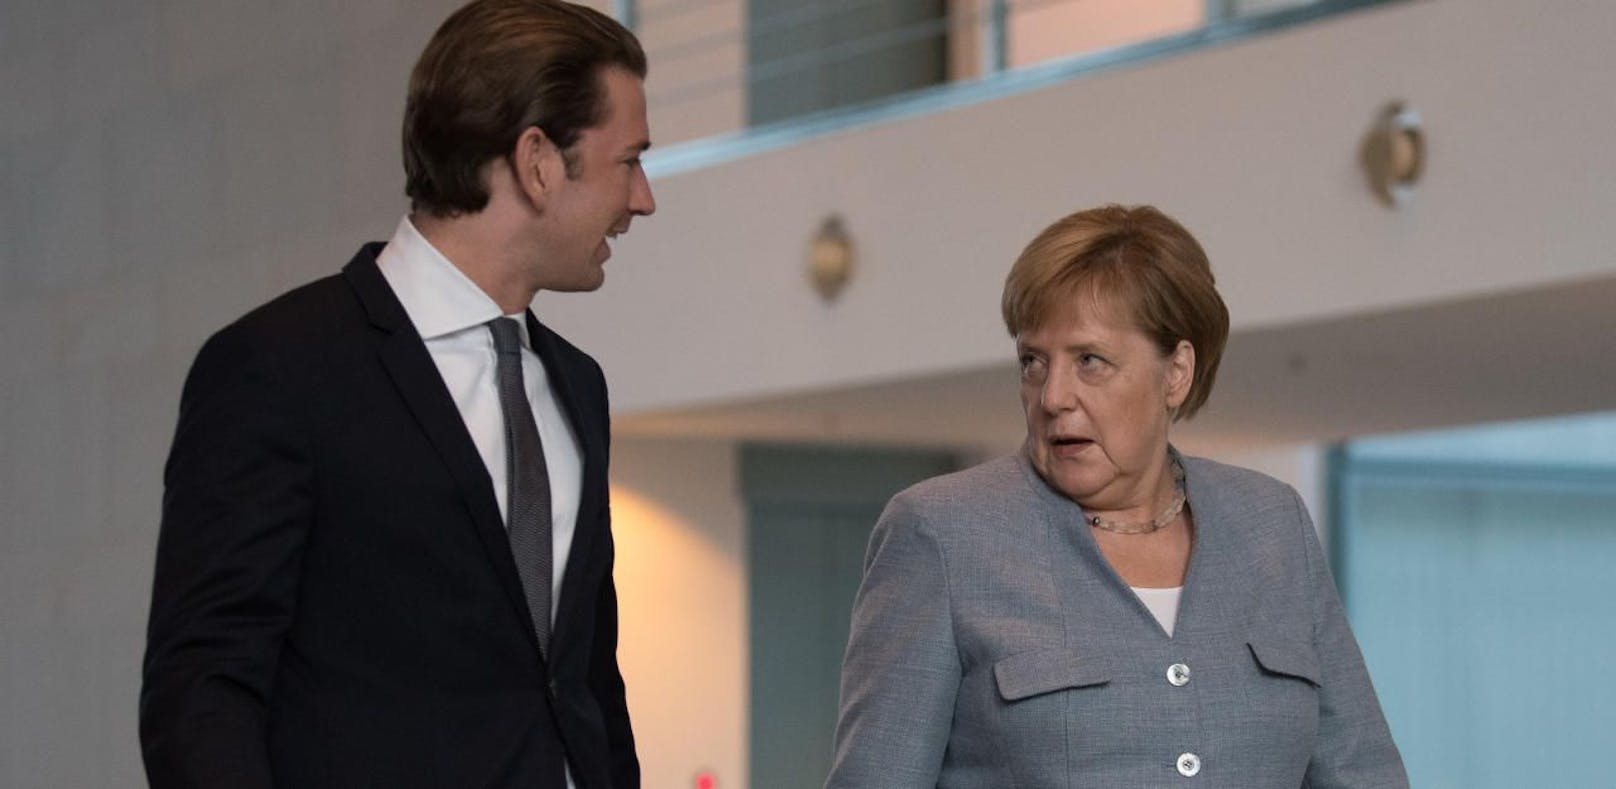 Bundeskanzlerin Angela Merkel (CDU) und Bundeskanzler Sebastian Kurz (ÖVP)